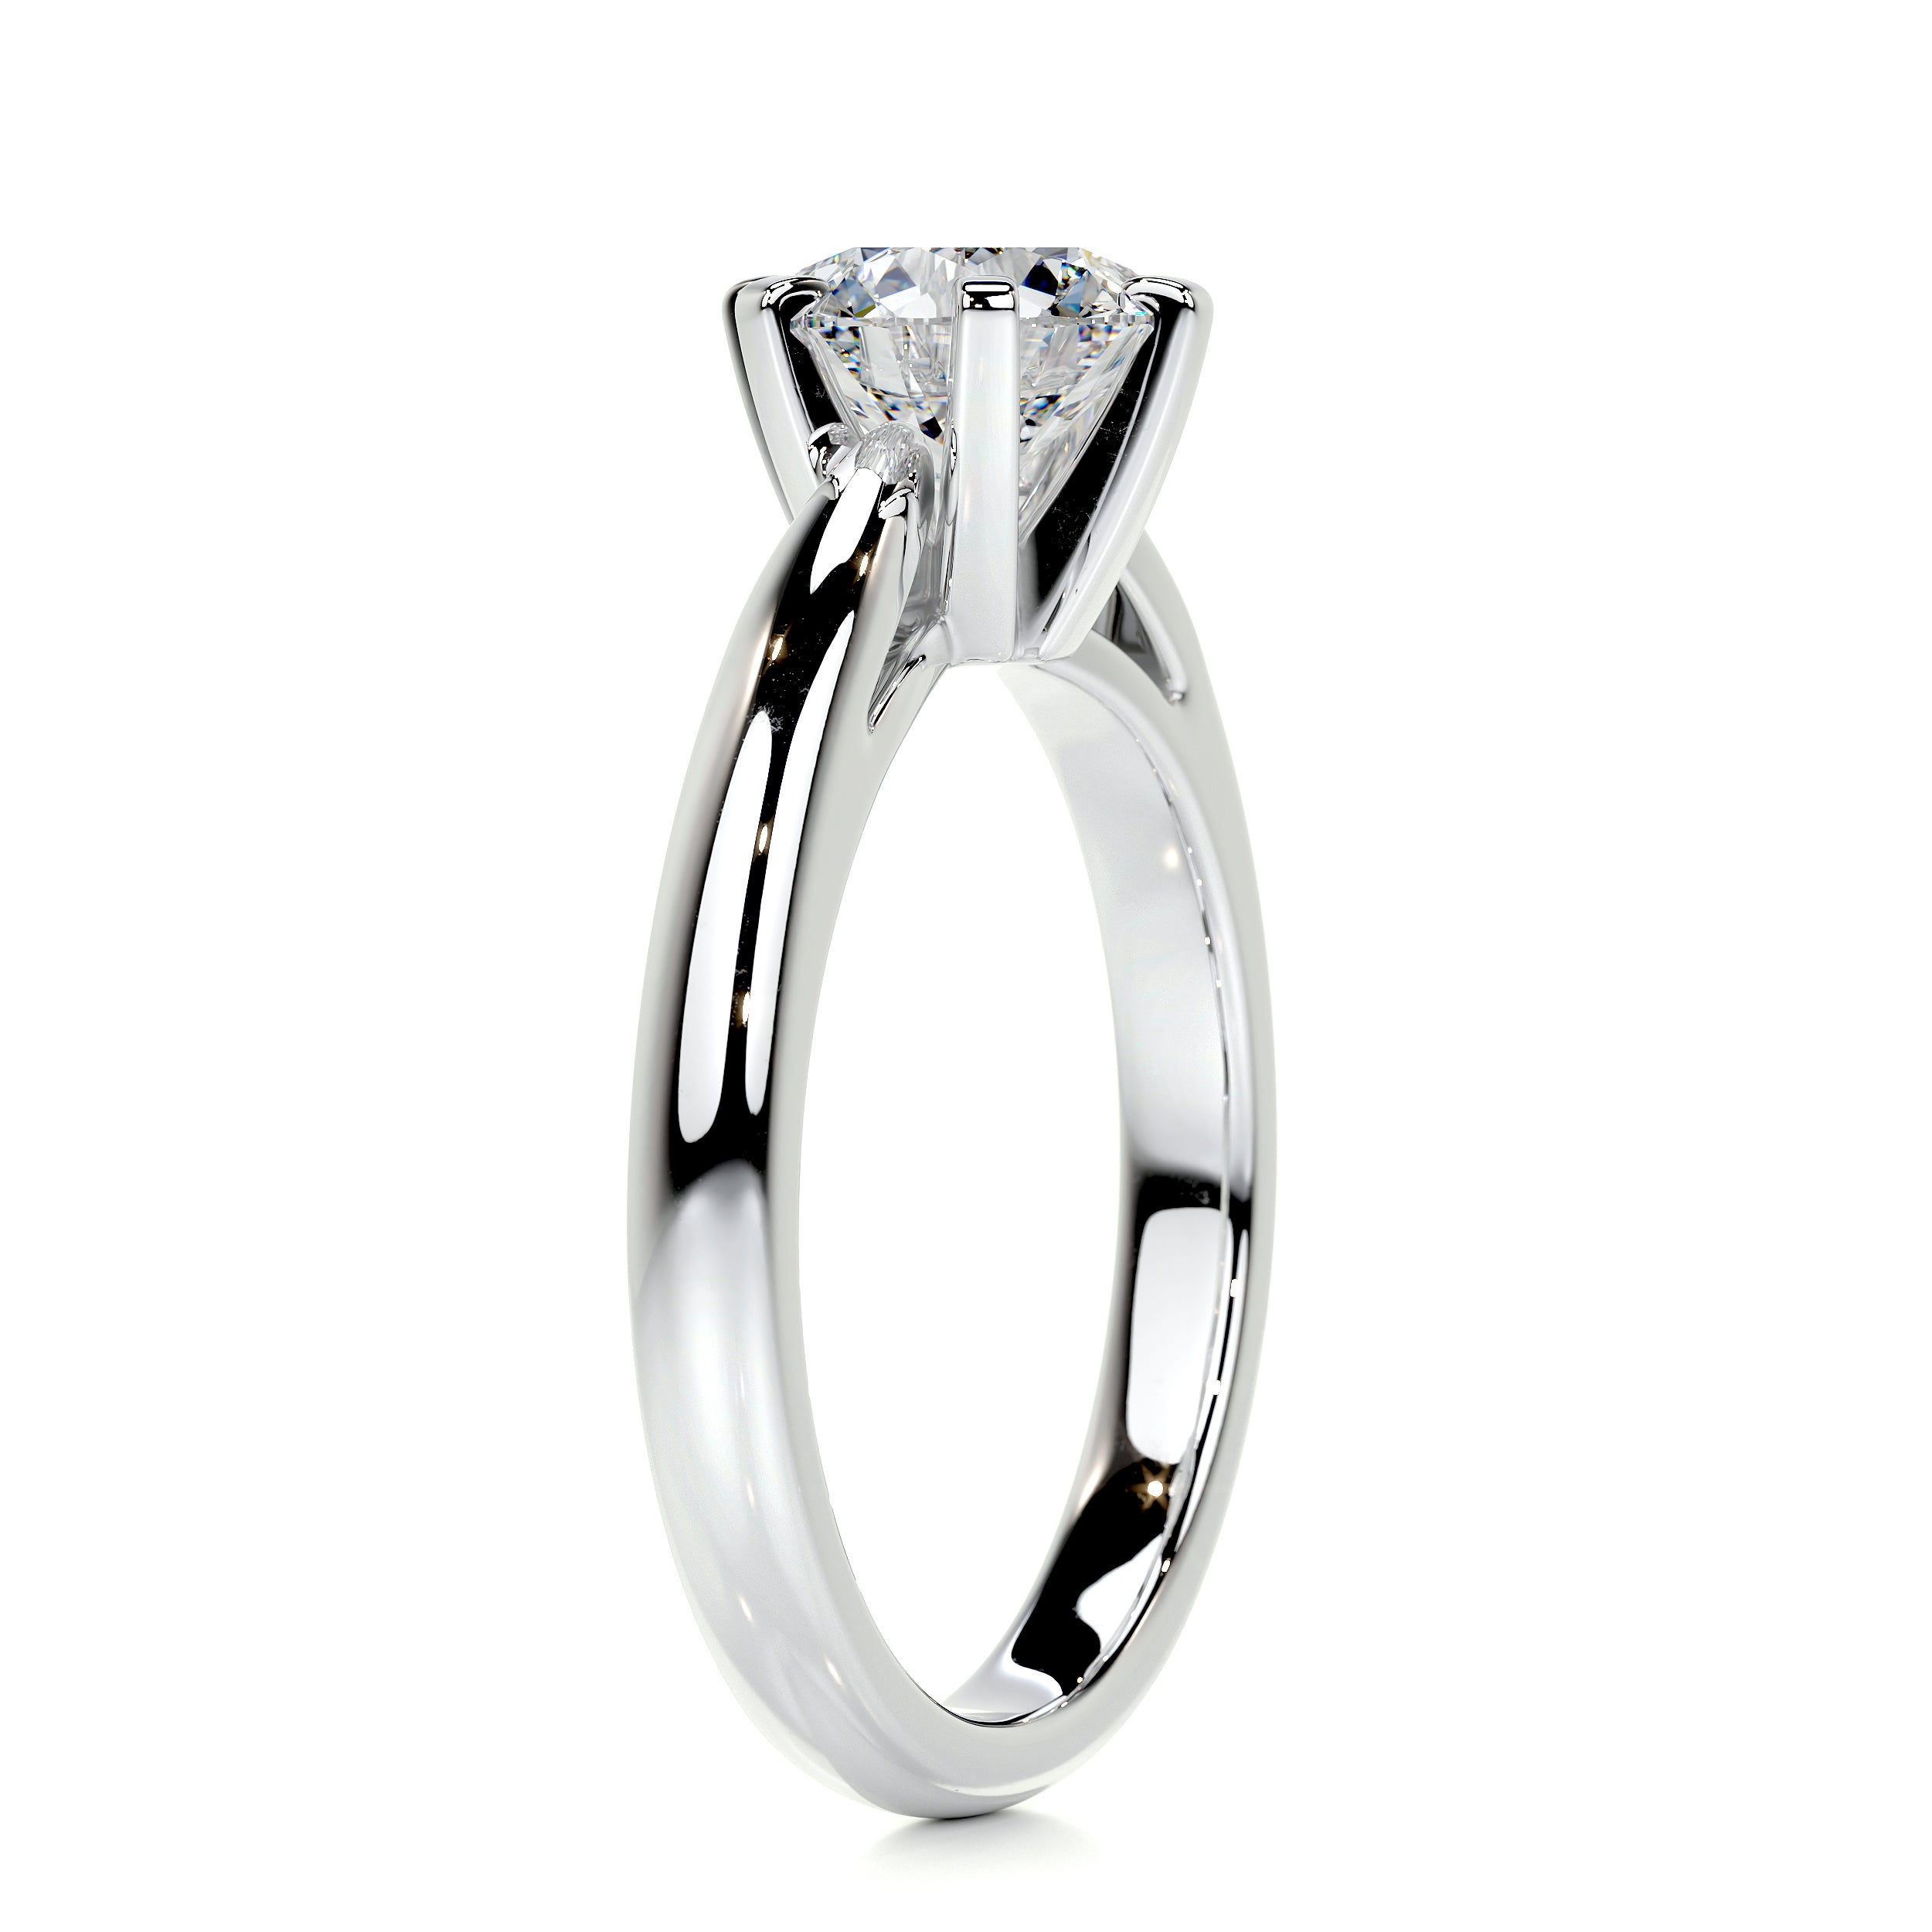 Talia Diamond Engagement Ring   (1 Carat) - Platinum